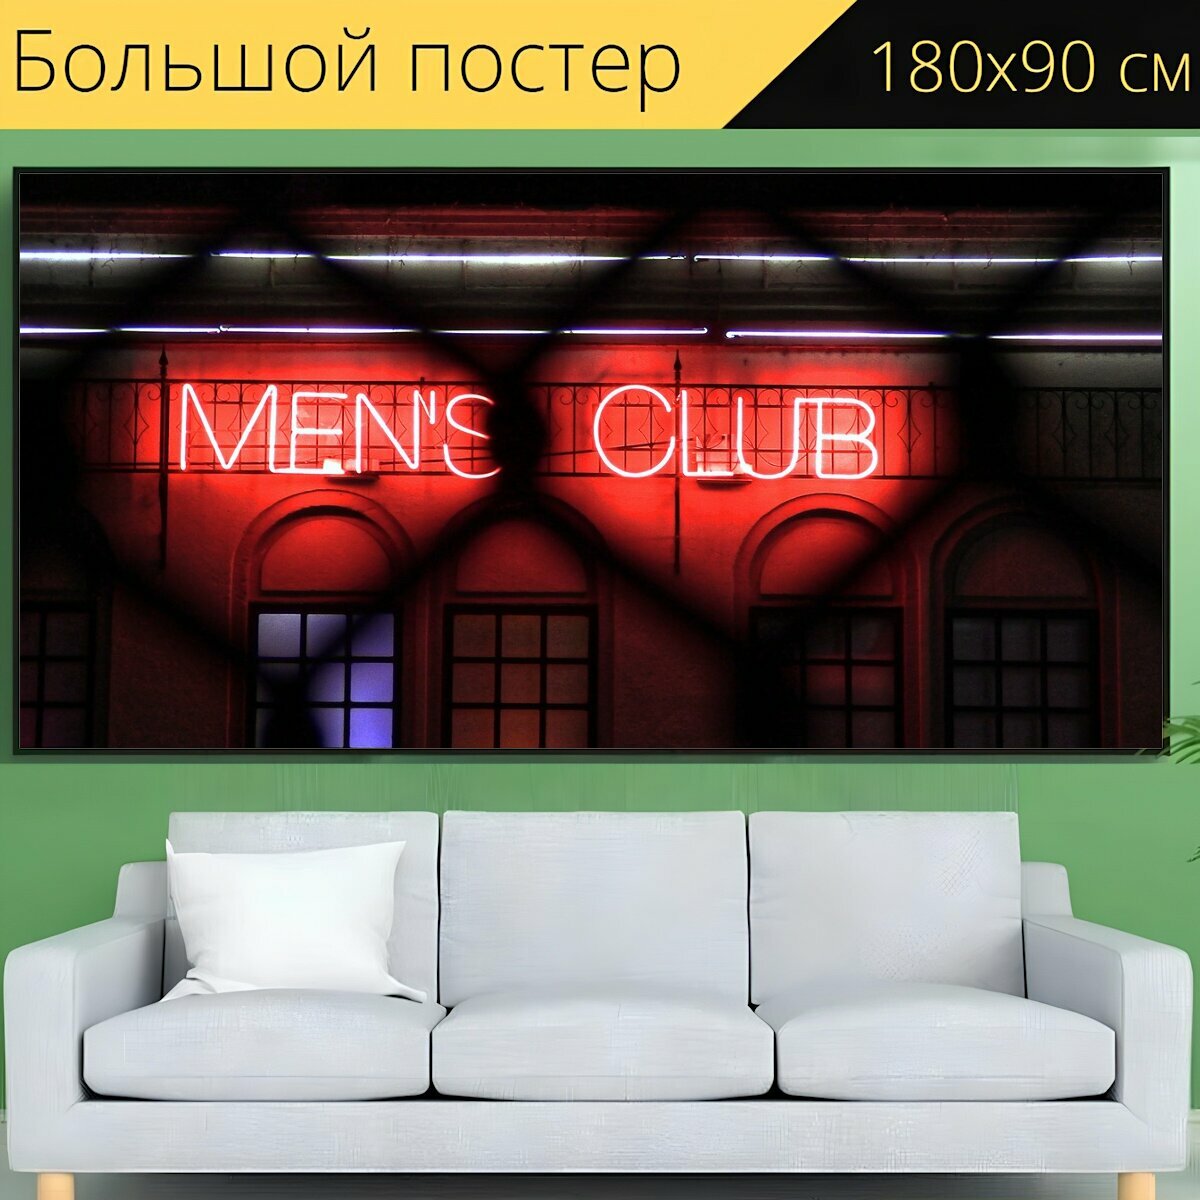 Большой постер "Клуб, неон, знак" 180 x 90 см. для интерьера